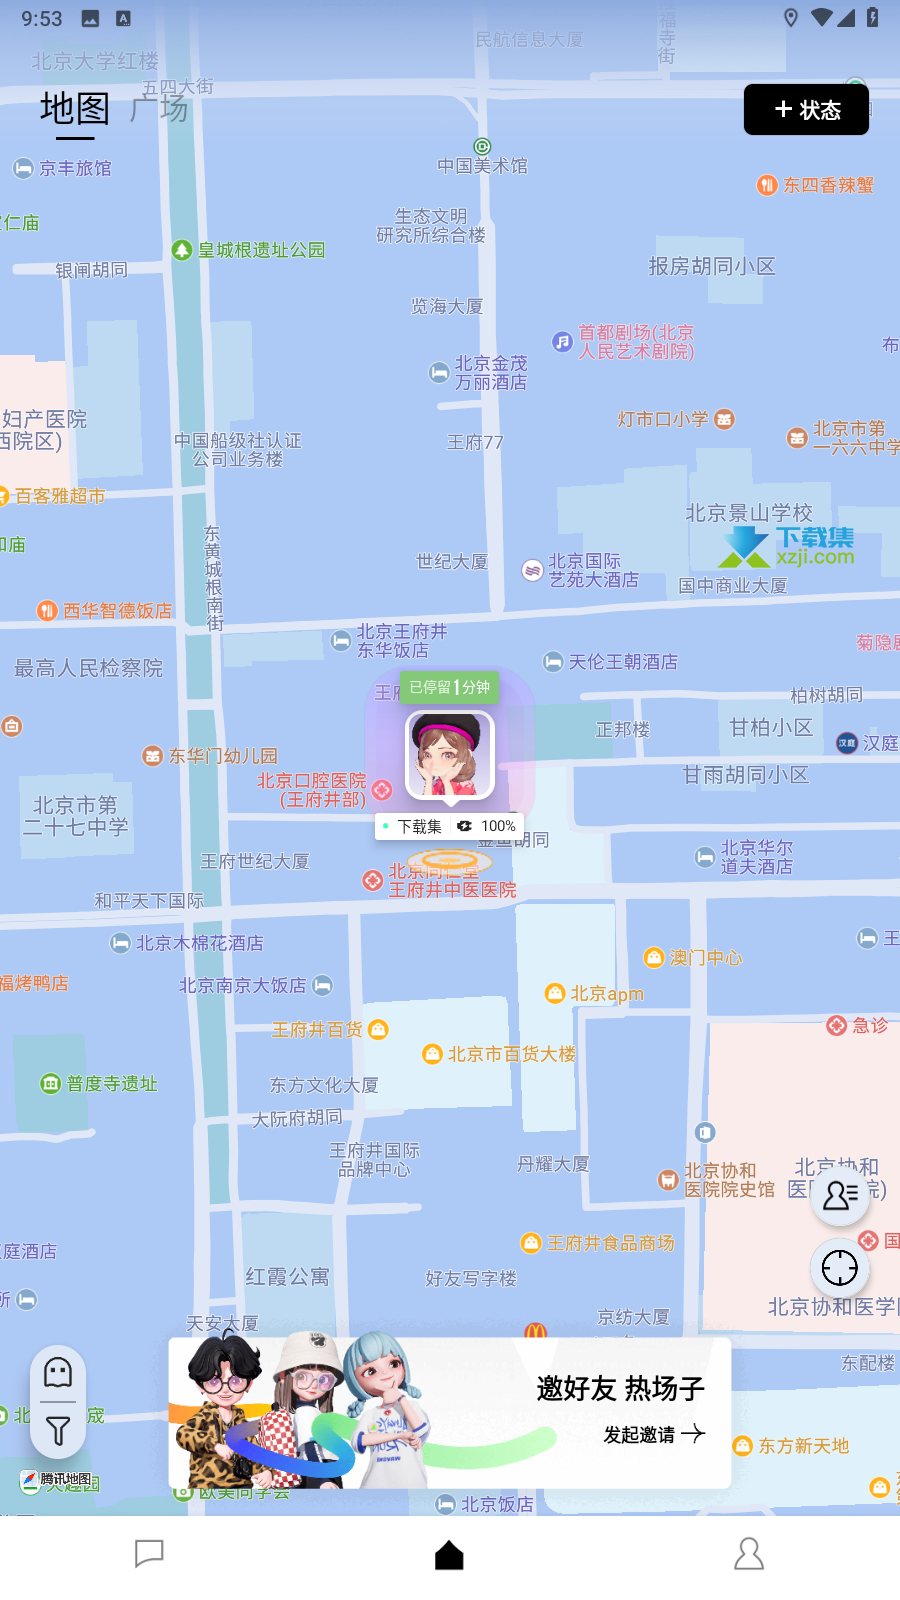 腾讯新款社交App "M8" 正式测试，基于地图虚拟社交引热议